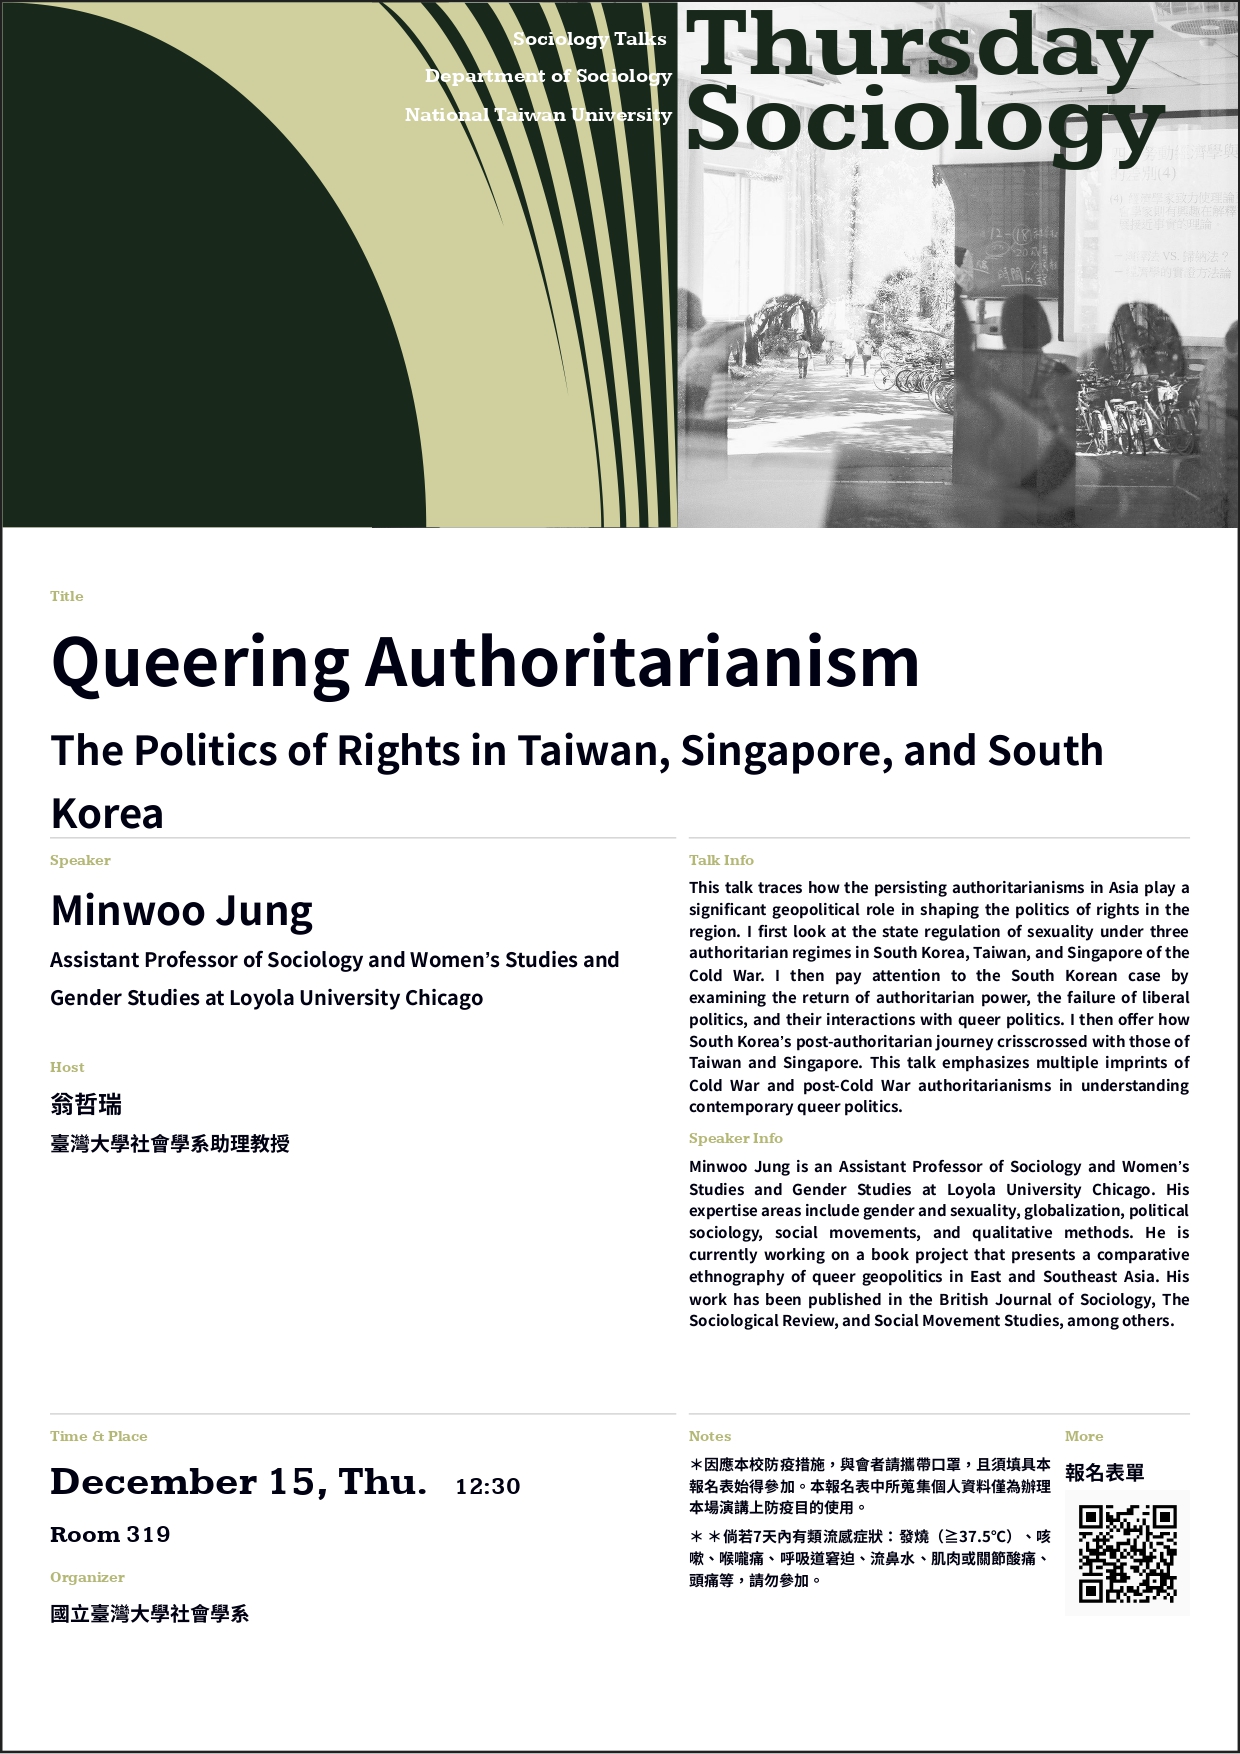 【台大社會系演講系列】2022/12/15-Queering Authoritarianism: The Politics of Rights in Taiwan, Singapore, and South Korea 〔Minwoo Jung（Assistant Professor of Sociology and Women’s Studies and Gender Studies at Loyola University Chicago）〕